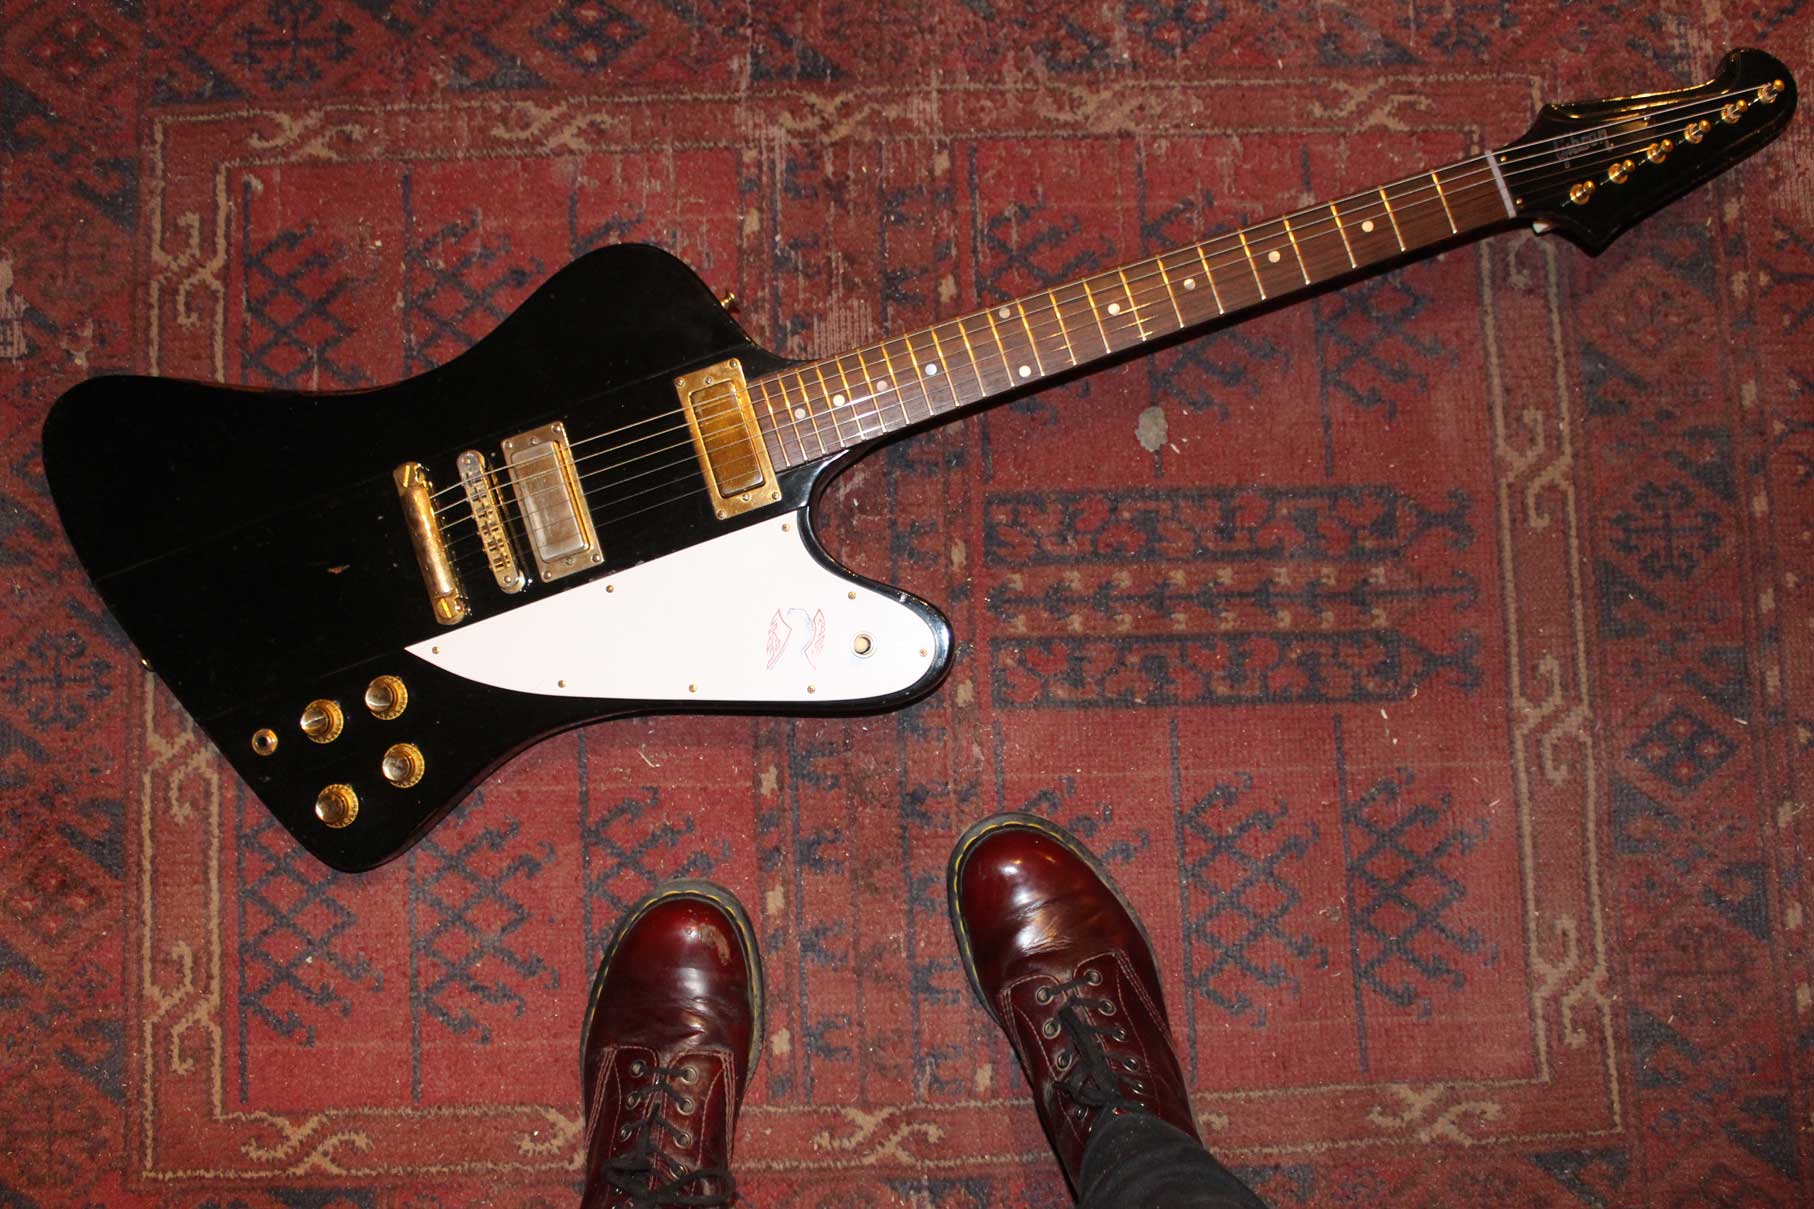 1976 Bicentennial Gibson Firebird